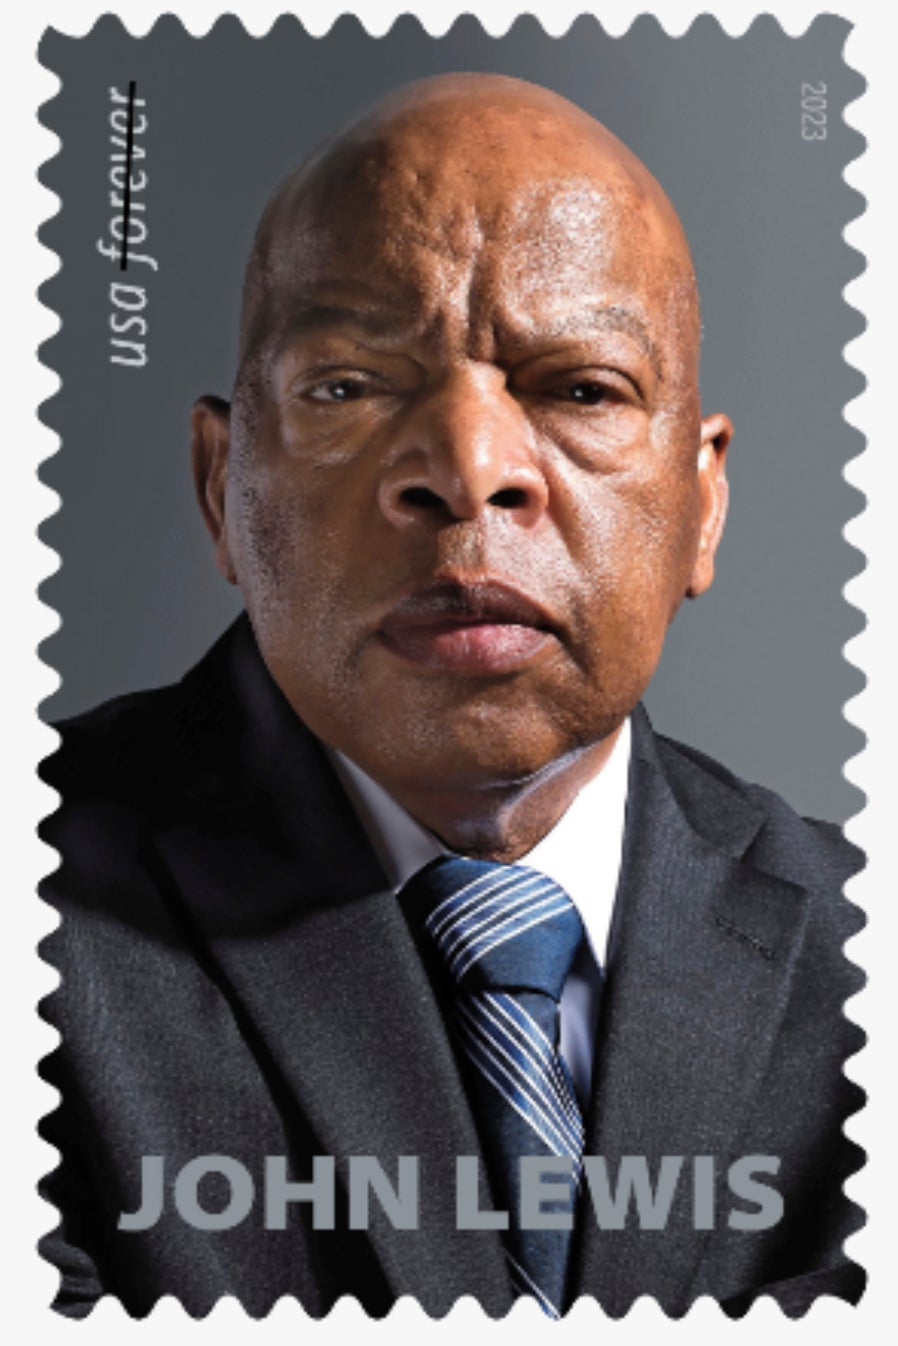 John Lewis-Stamp